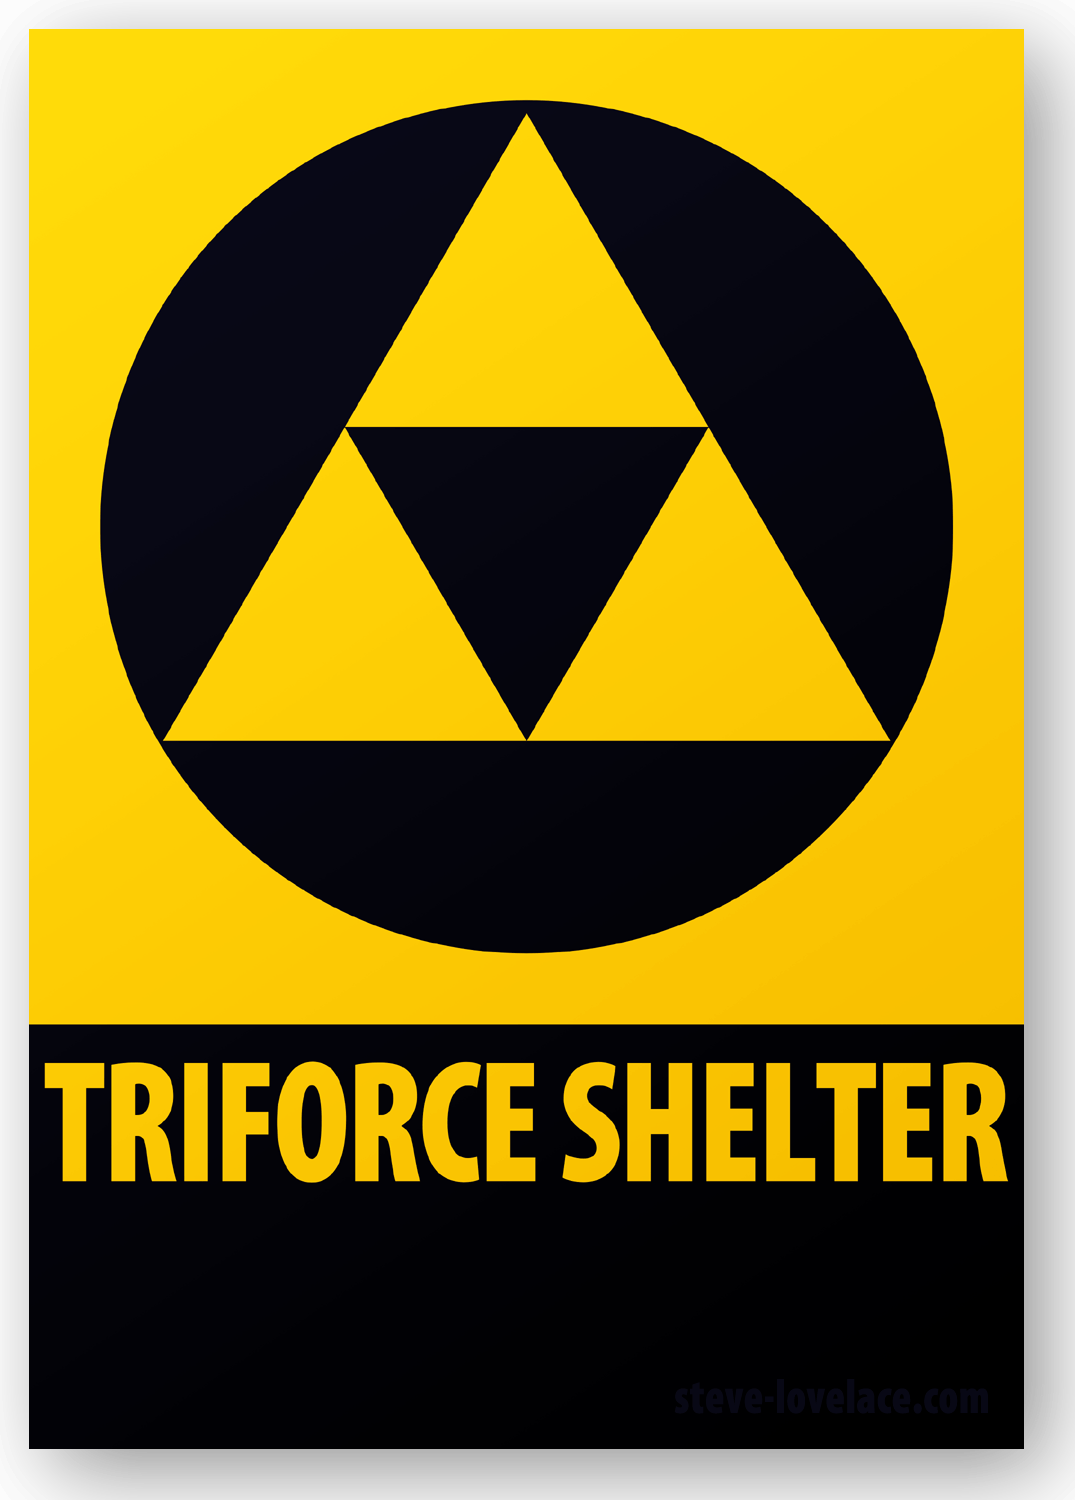 Bomb Shelter Logo - The Fallout Shelter Sign — Steve Lovelace